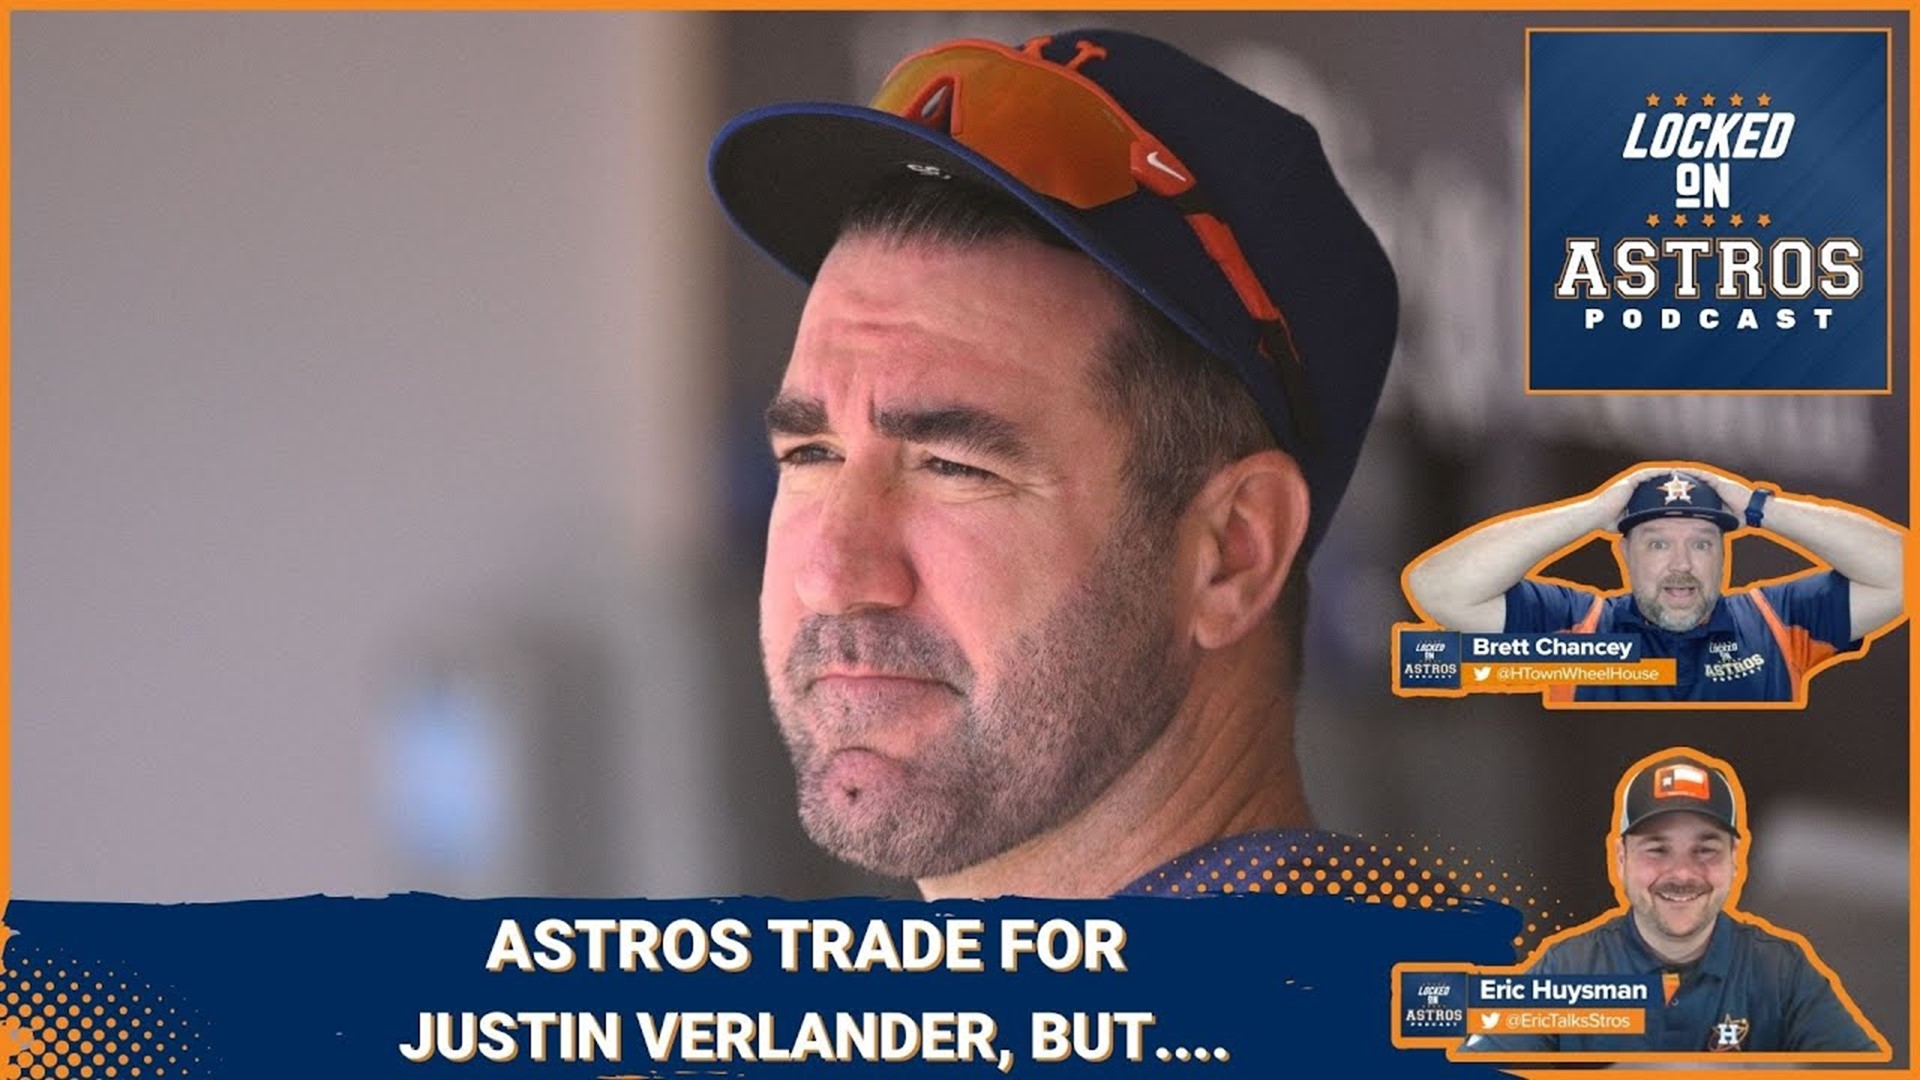 Astros trade for Justin Verlander, but it hurt...he's back